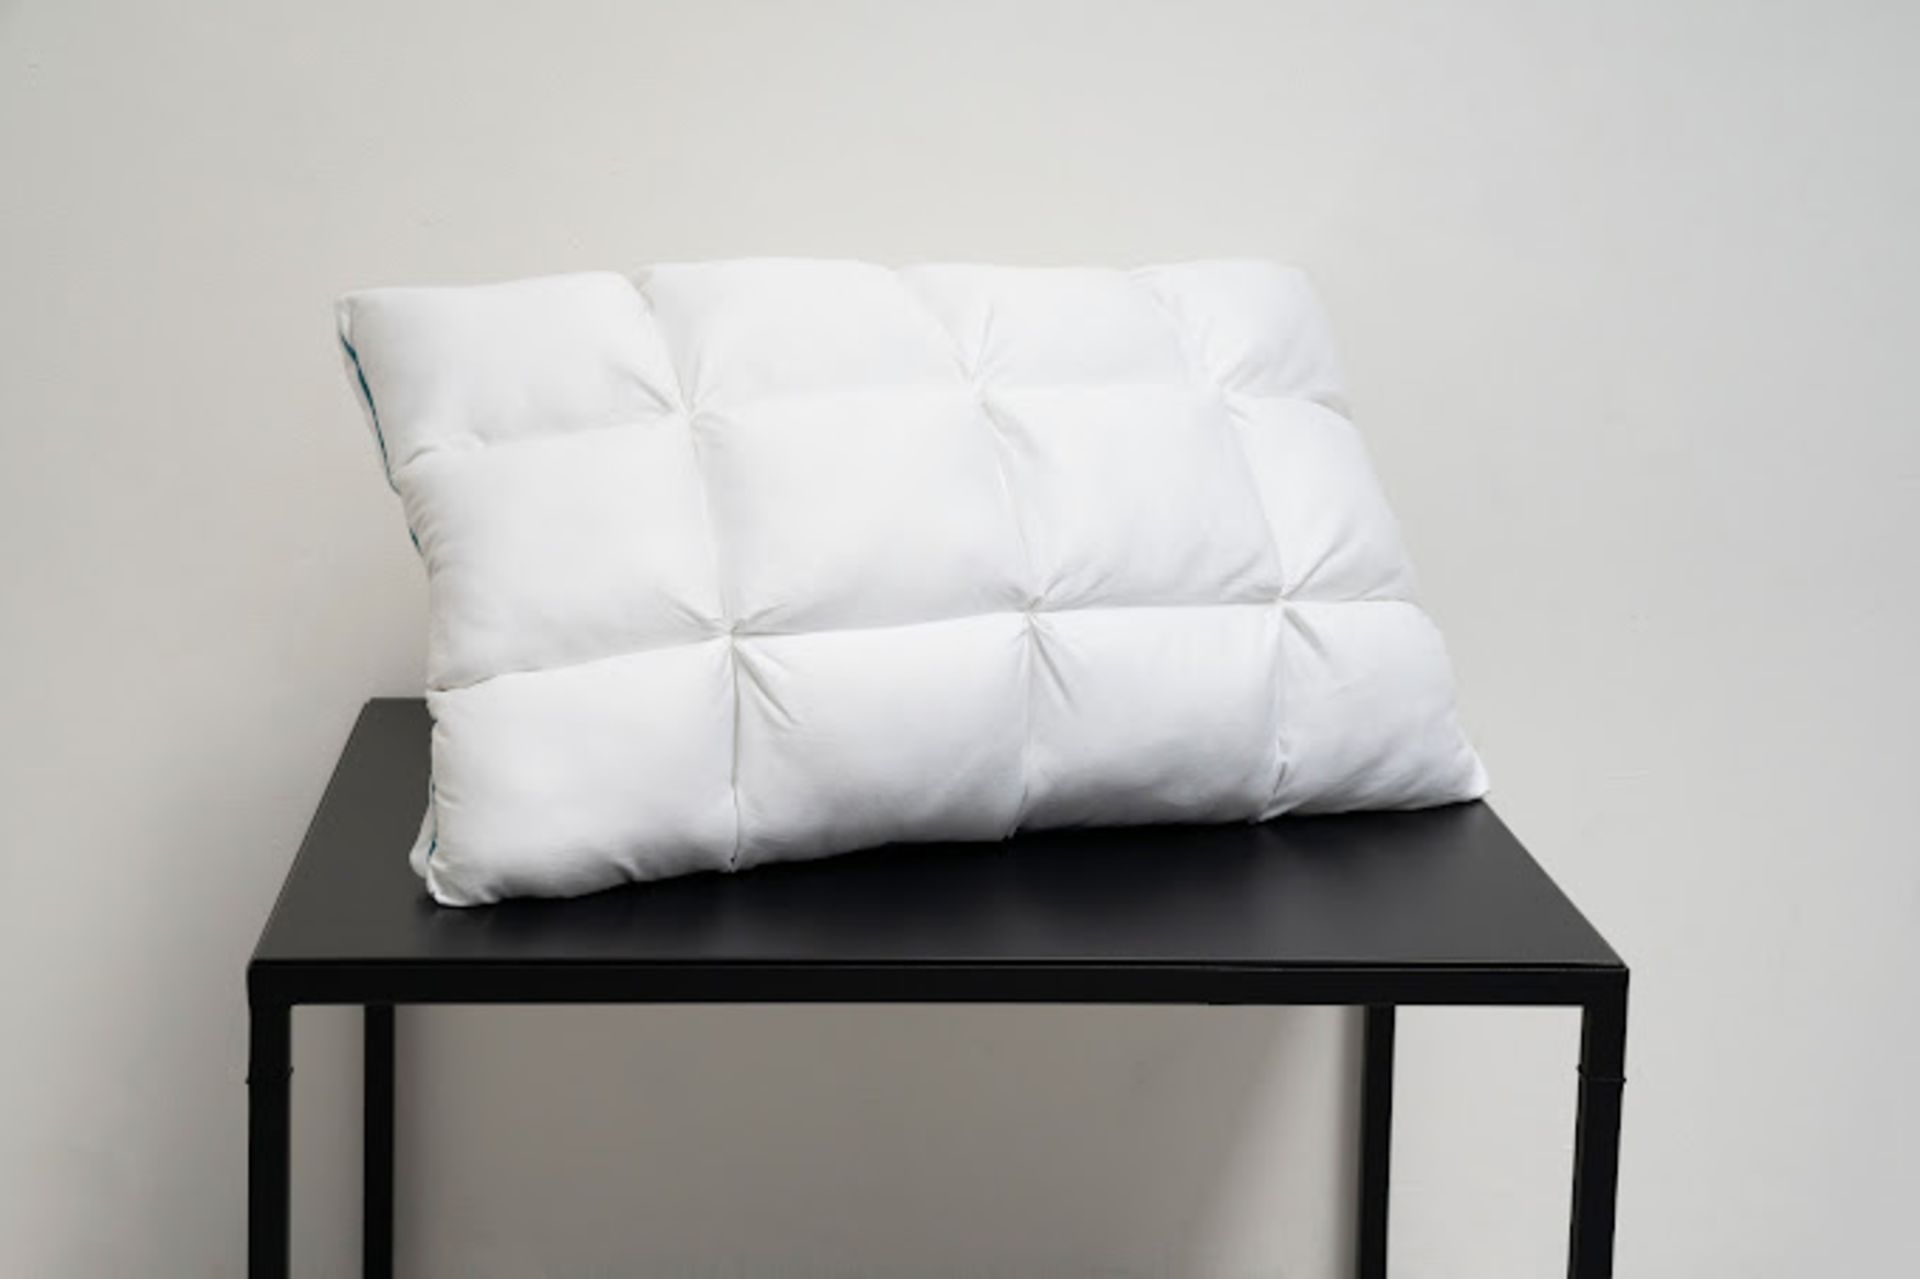 2 x ComfaSleep PL0001 Pillows - Bild 3 aus 9